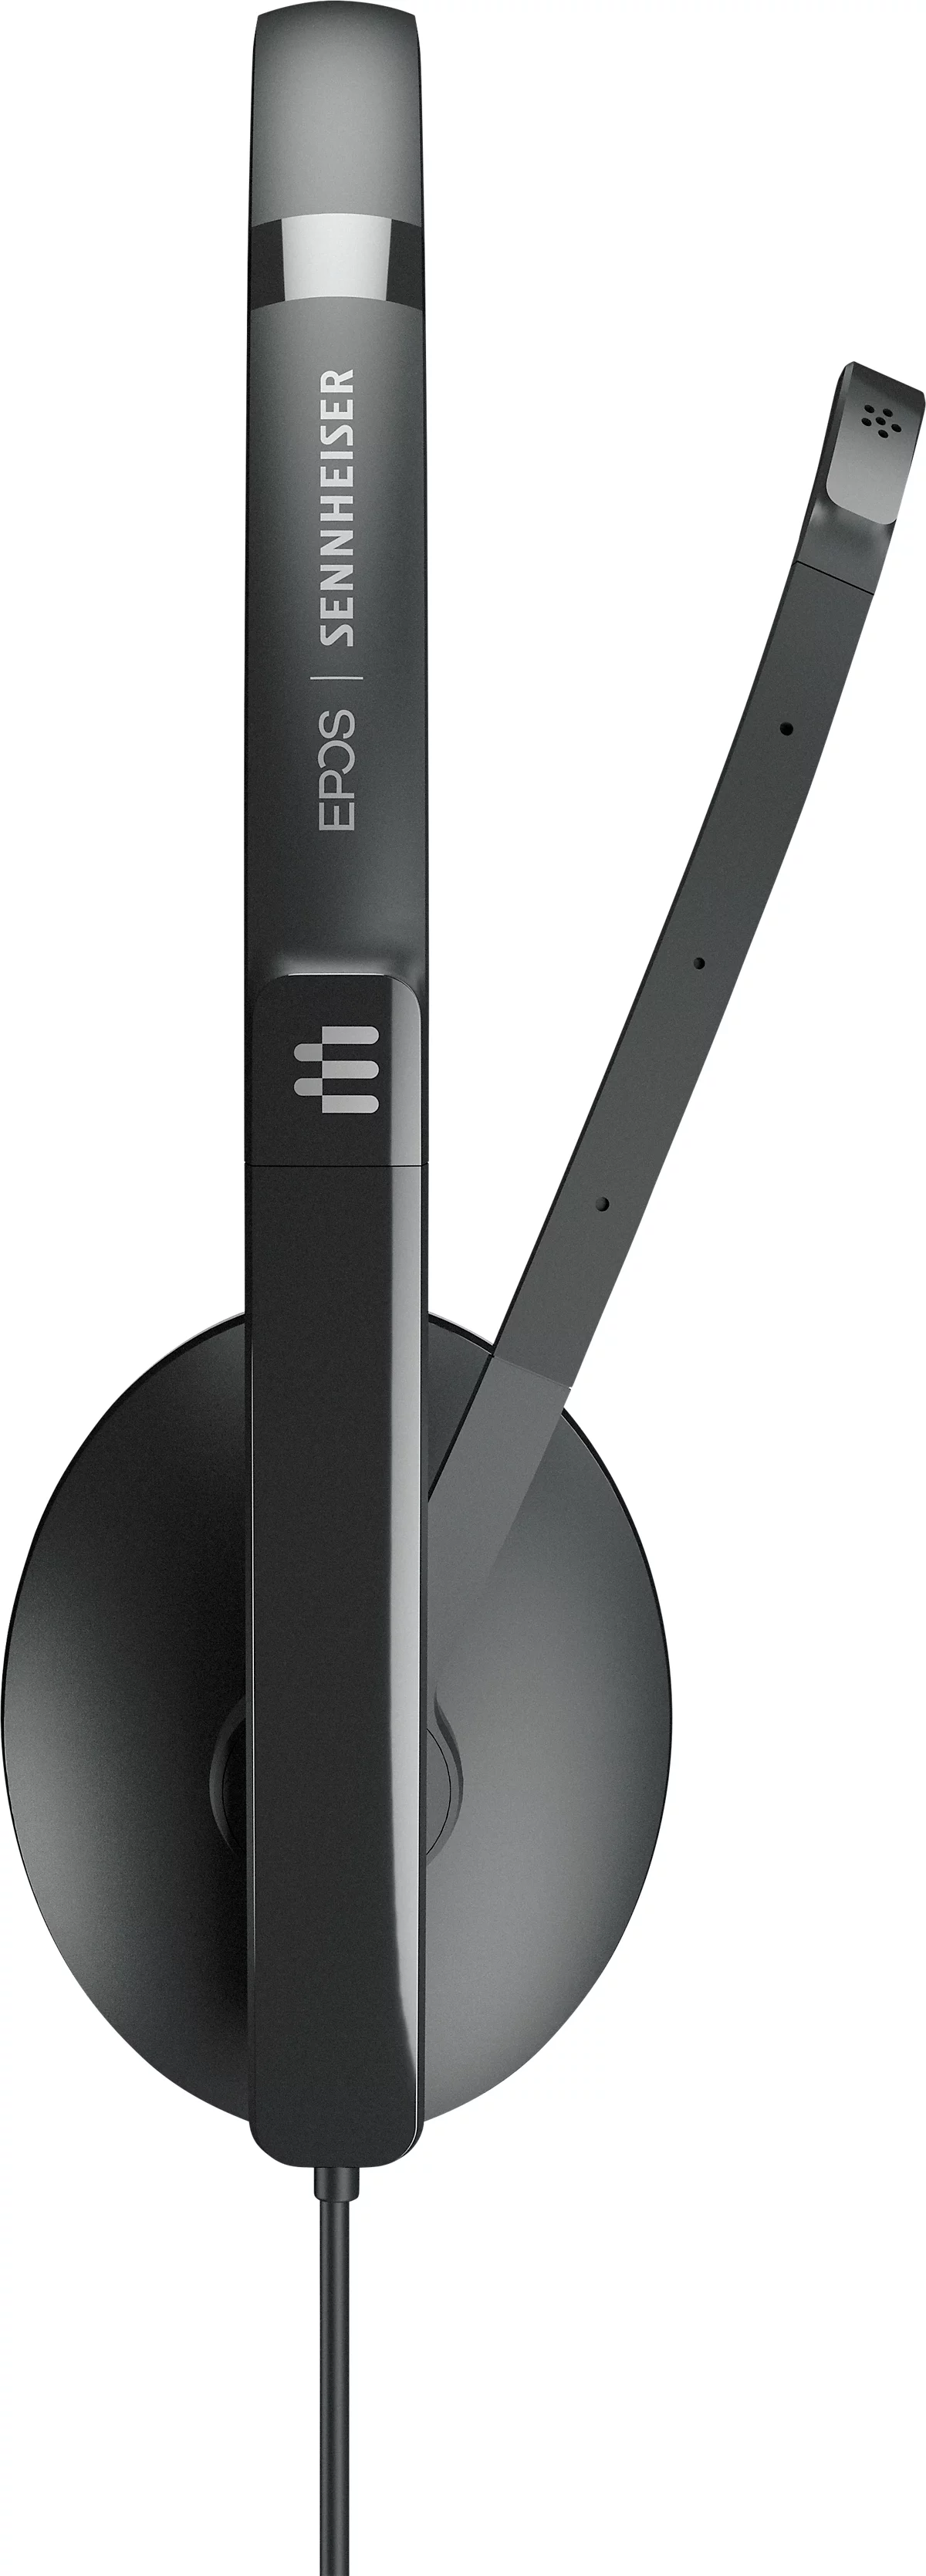 EPOS I SENNHEISER On-Ear ADAPT 160T USB II, USB A, binaural, faltbar, Microsoft Teams zertifiziert, schwarz 